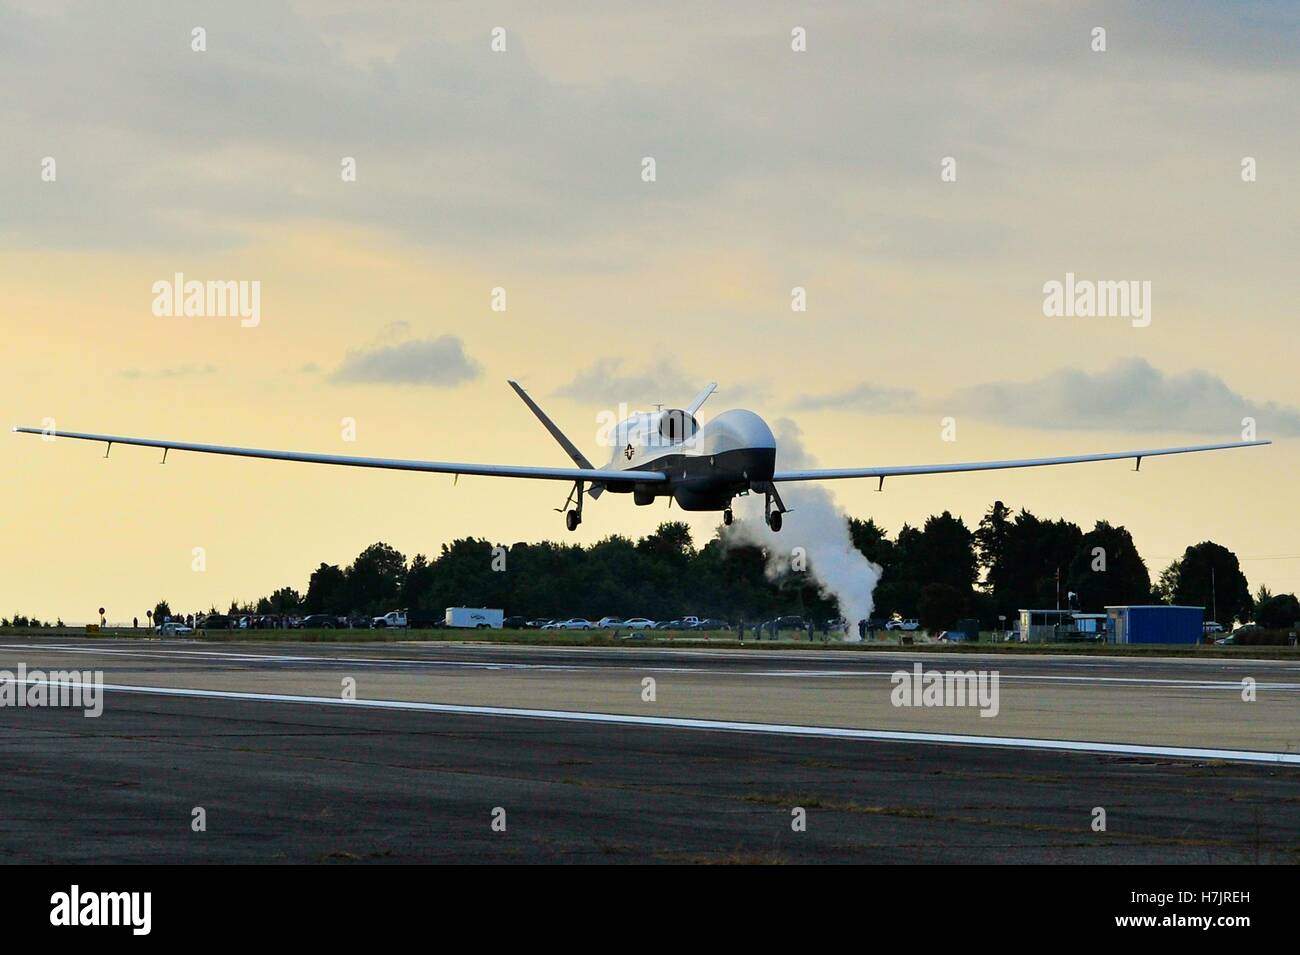 El MQ-4C Triton aviones no tripulados se prepara para aterrizar en la pista de aterrizaje en la Estación Aeronaval Patuxent River después de completar su primer vuelo de cross-country de California el 18 de septiembre de 2014 en Maryland. Foto de stock